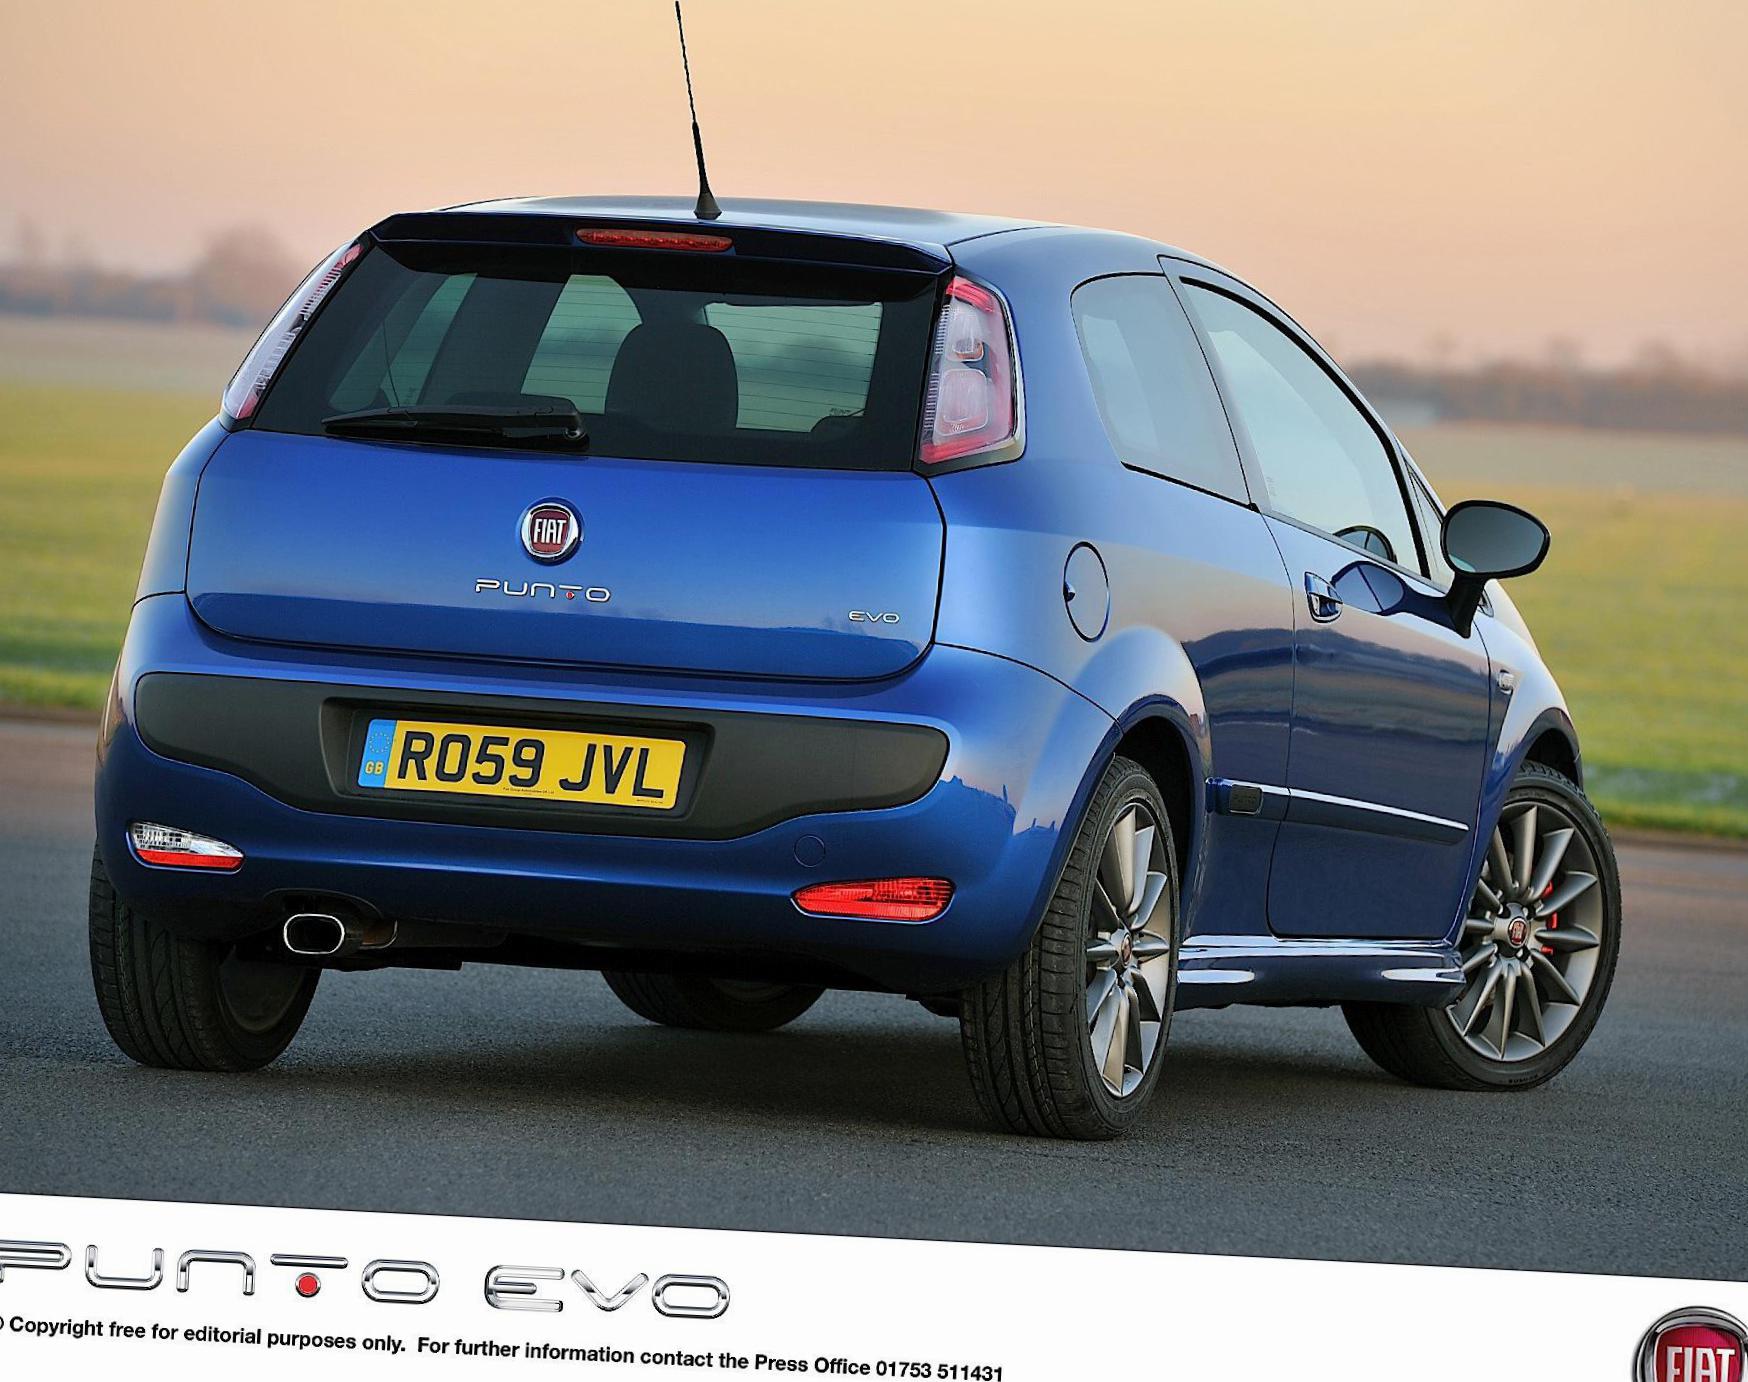 Fiat Punto Evo 3 doors prices 2012